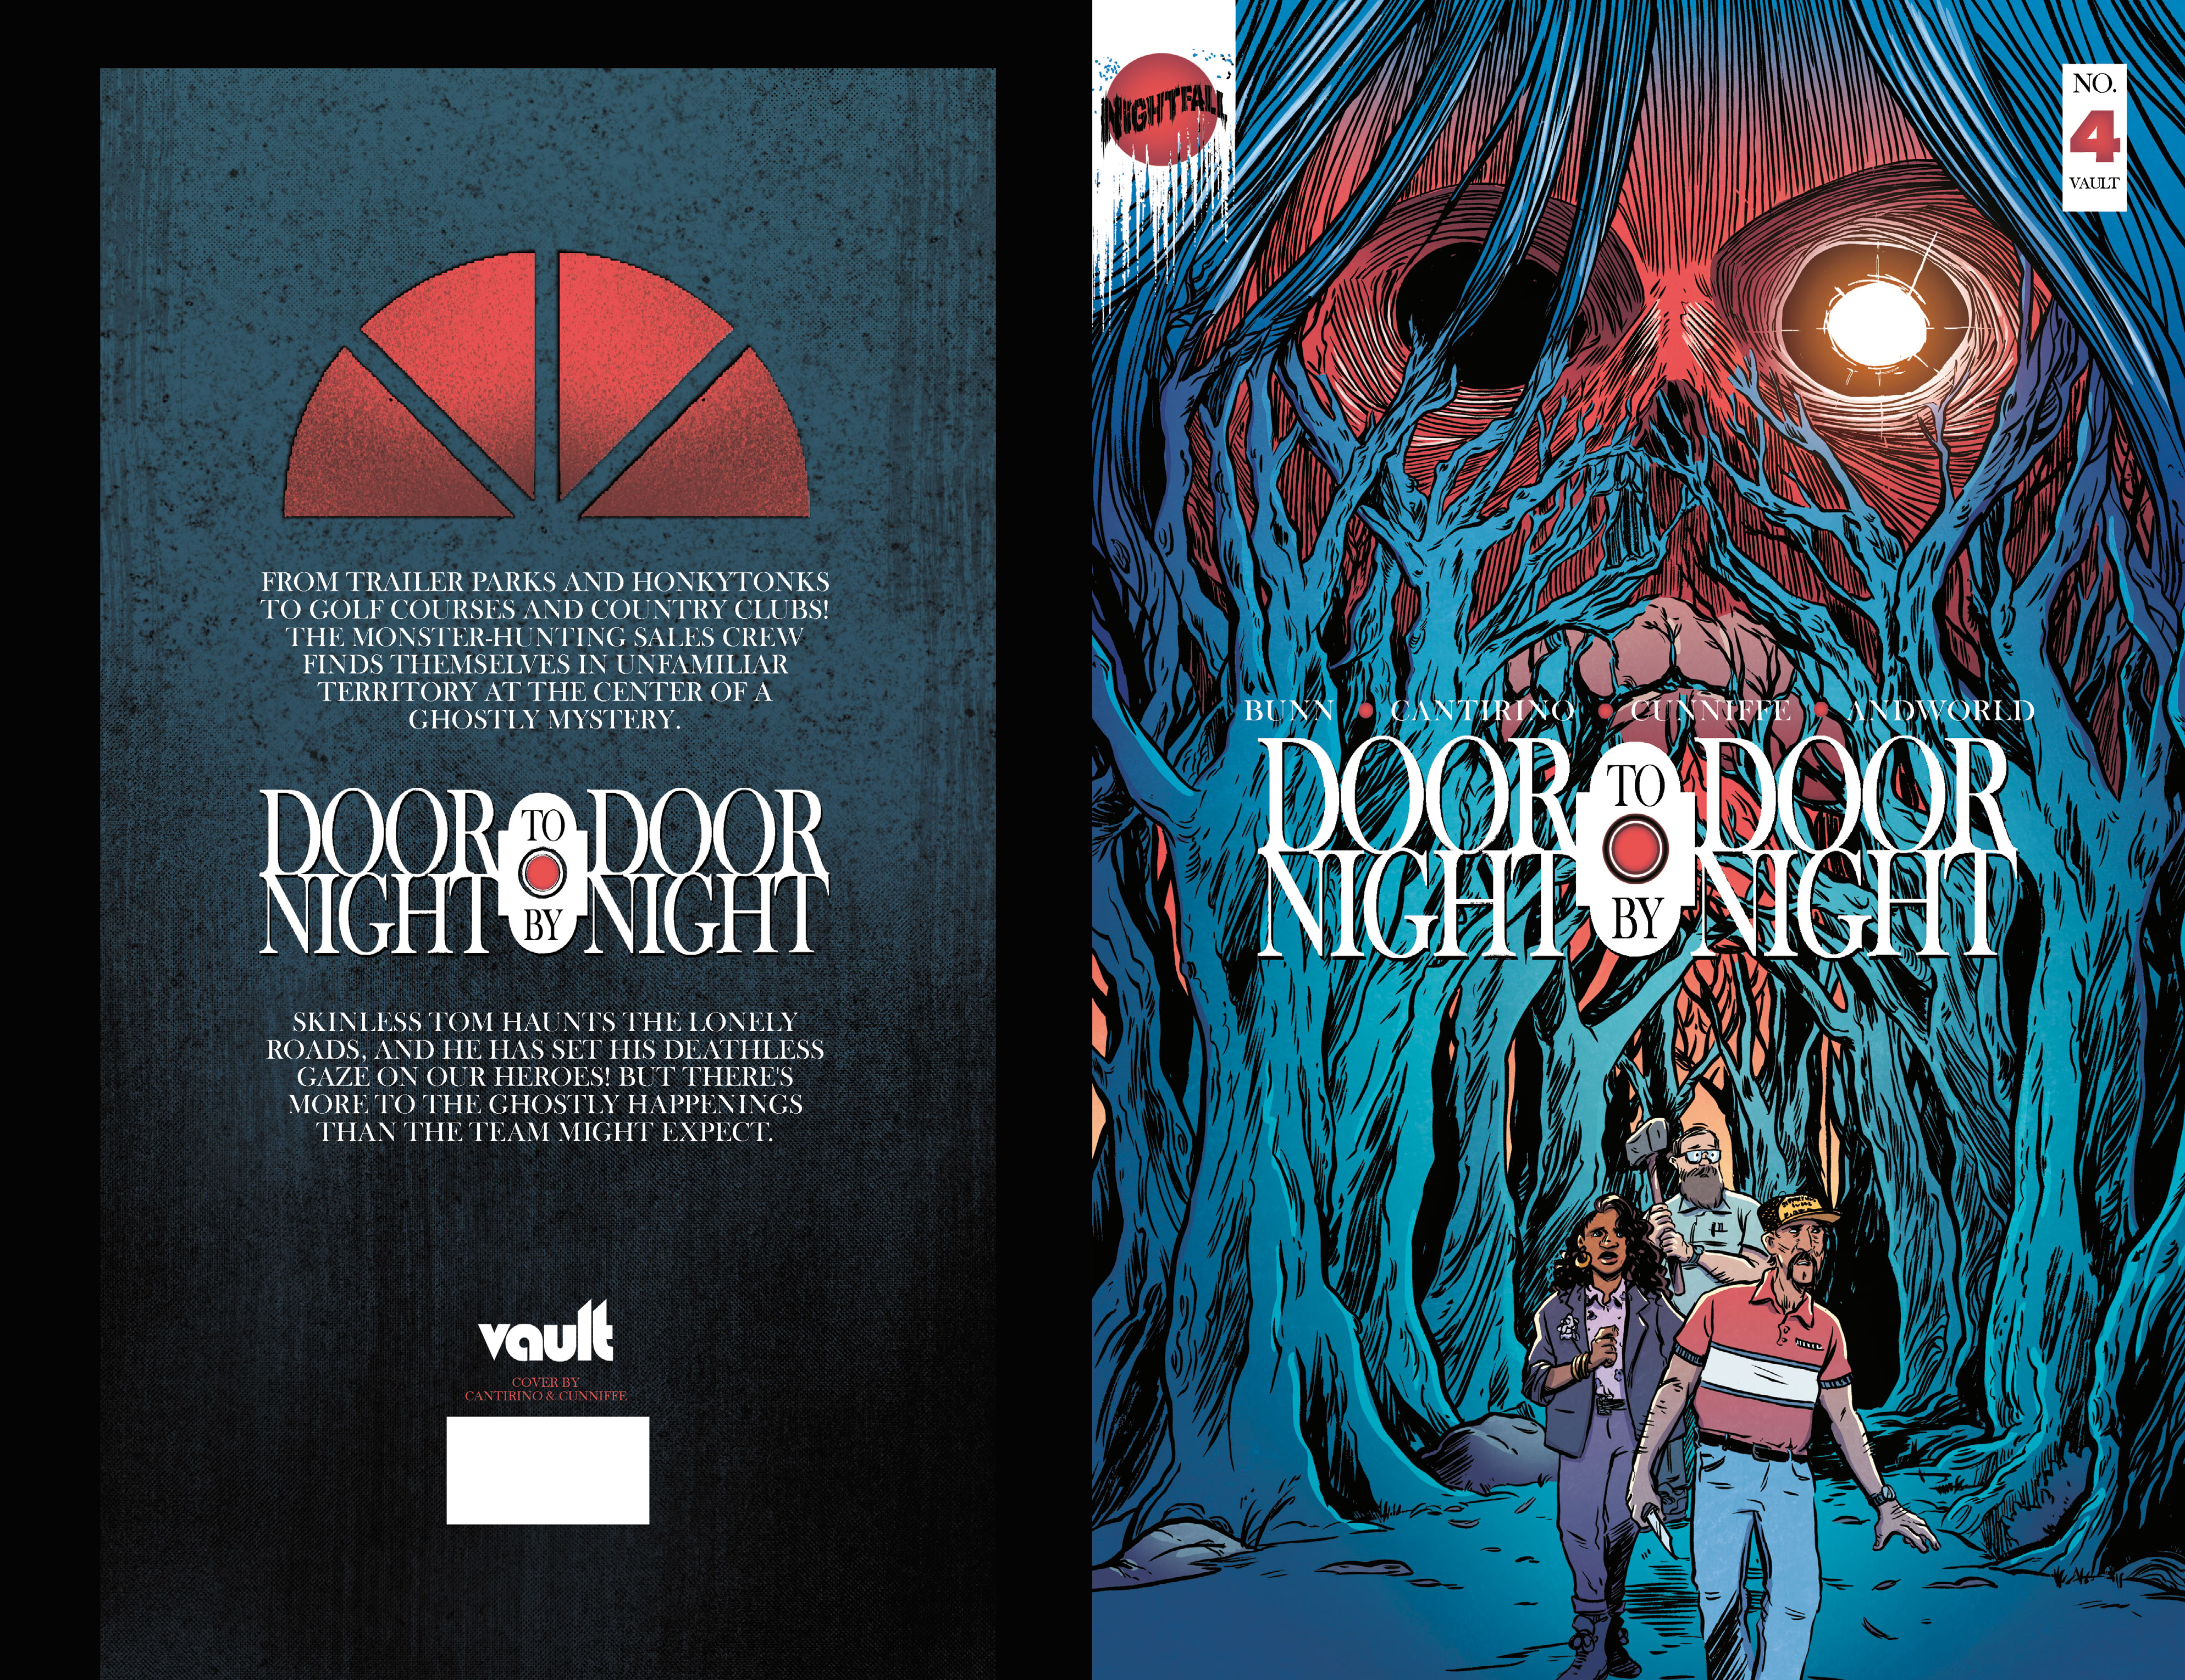 Read online Door to Door, Night by Night comic -  Issue #4 - 1